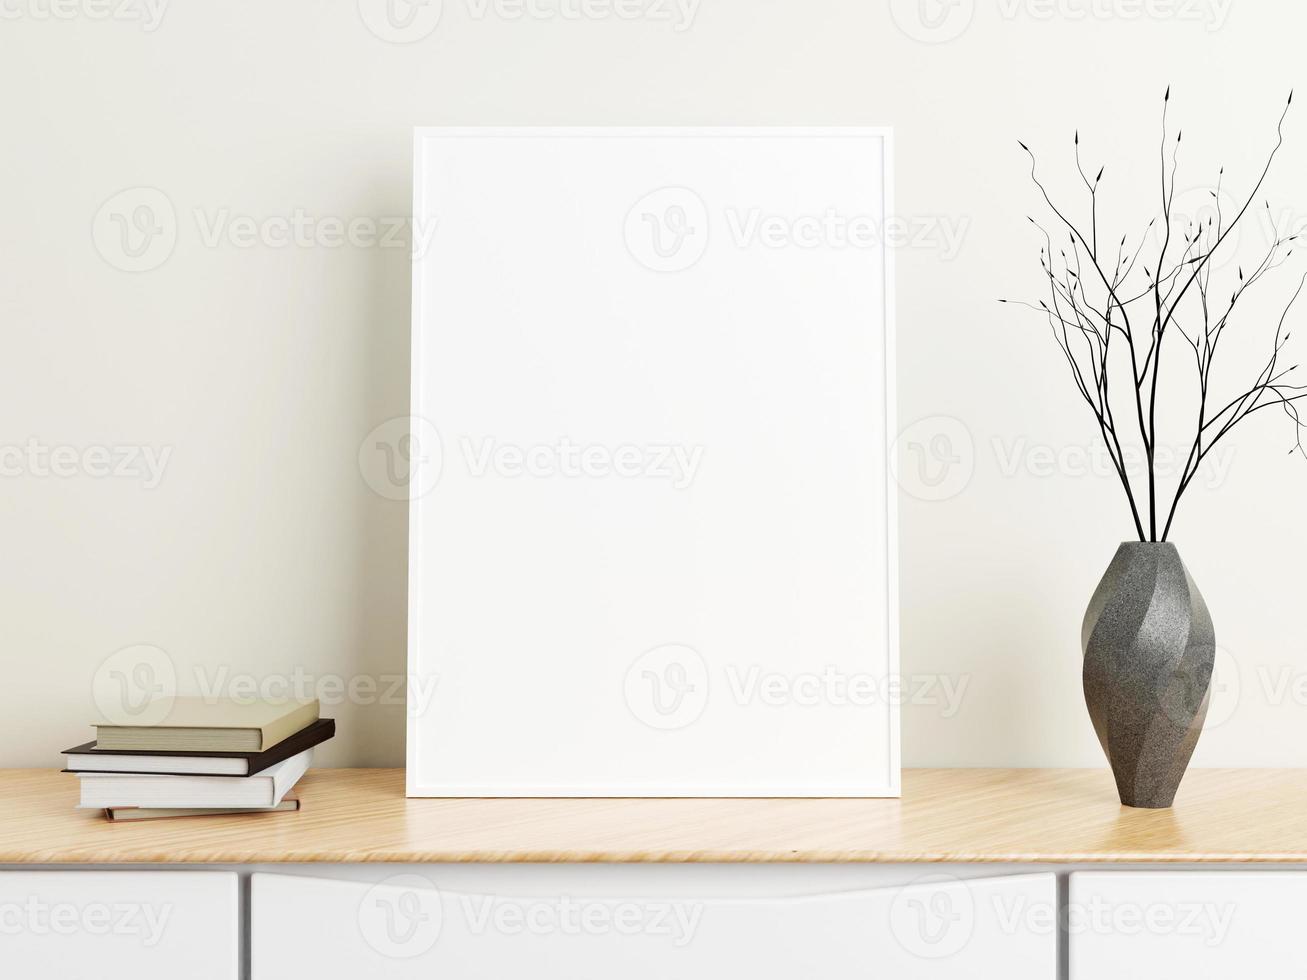 affiche blanche verticale minimaliste ou maquette de cadre photo sur table en bois avec livres et vase dans une pièce. rendu 3d.